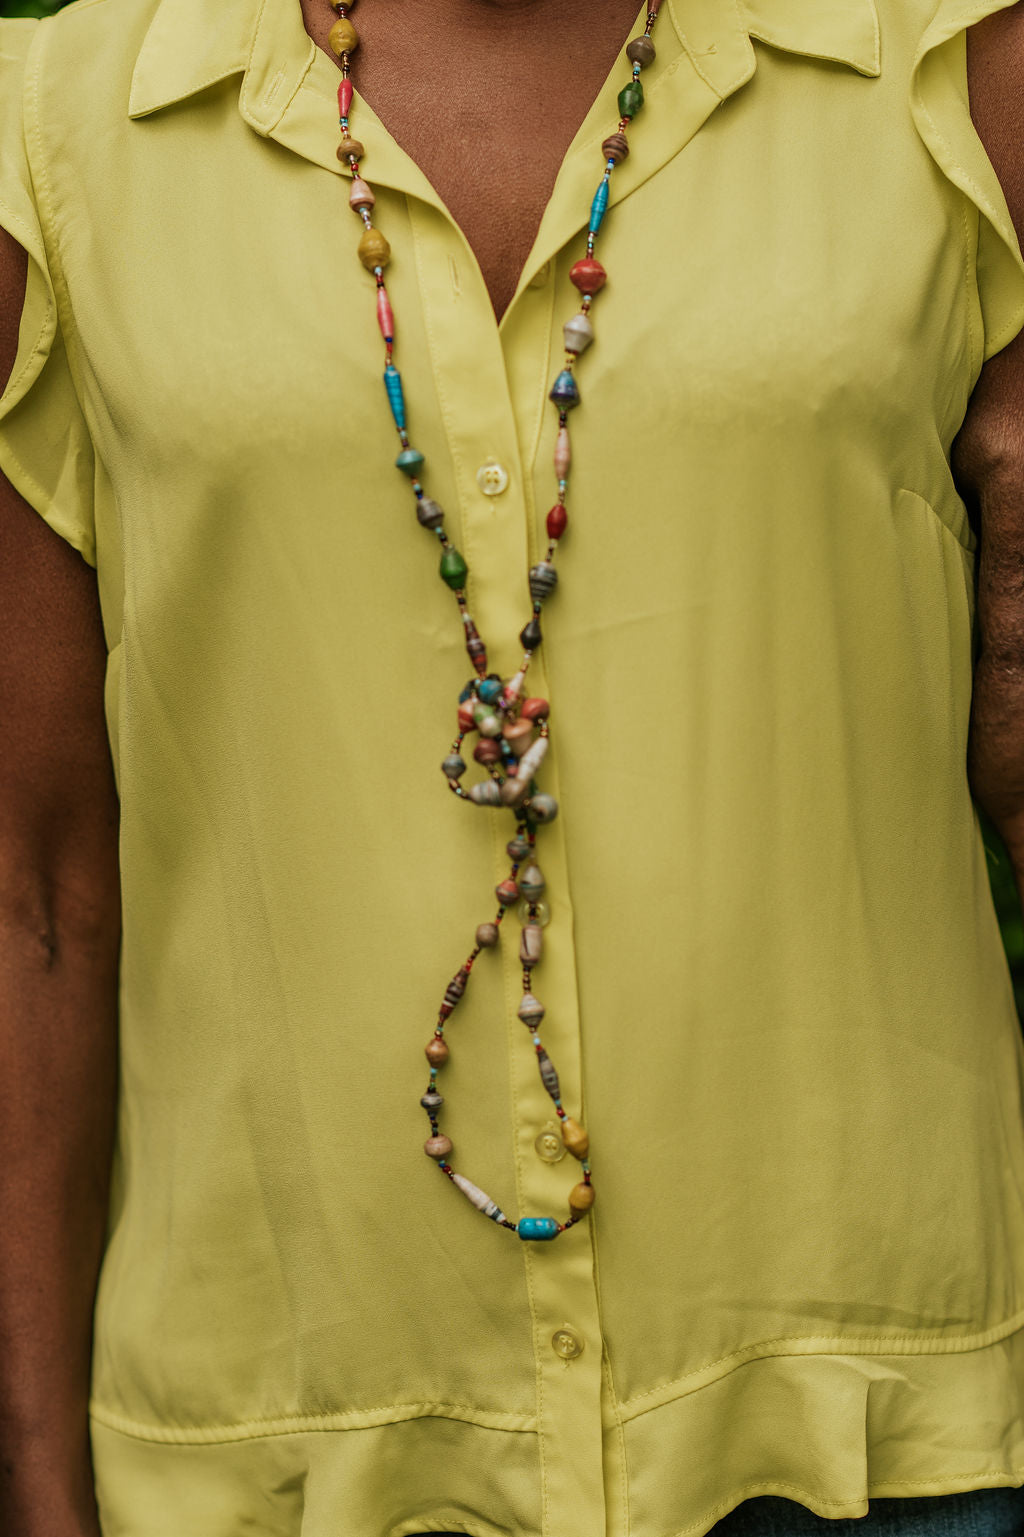 Handmade Ugandan Paper Bead Necklace Multicolor